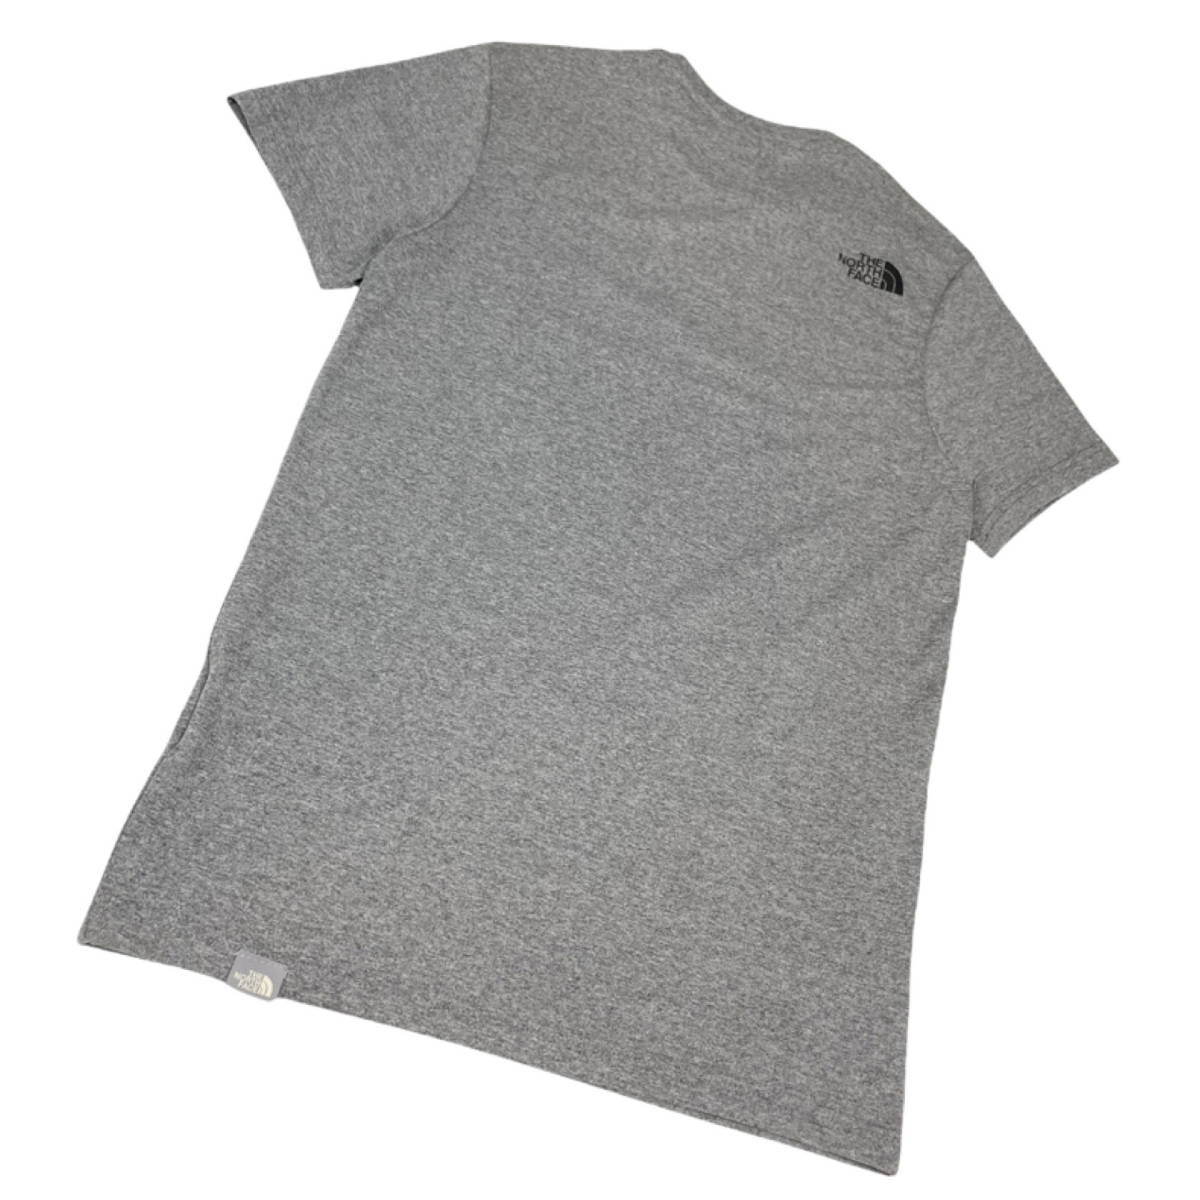 ノースフェイス 半袖 Tシャツ NF0A2TX5 シンプルドーム グレー XLサイズ ロゴ ユニセックス THE NORTH FACE S/S SIMPLE DOME TEE 新品